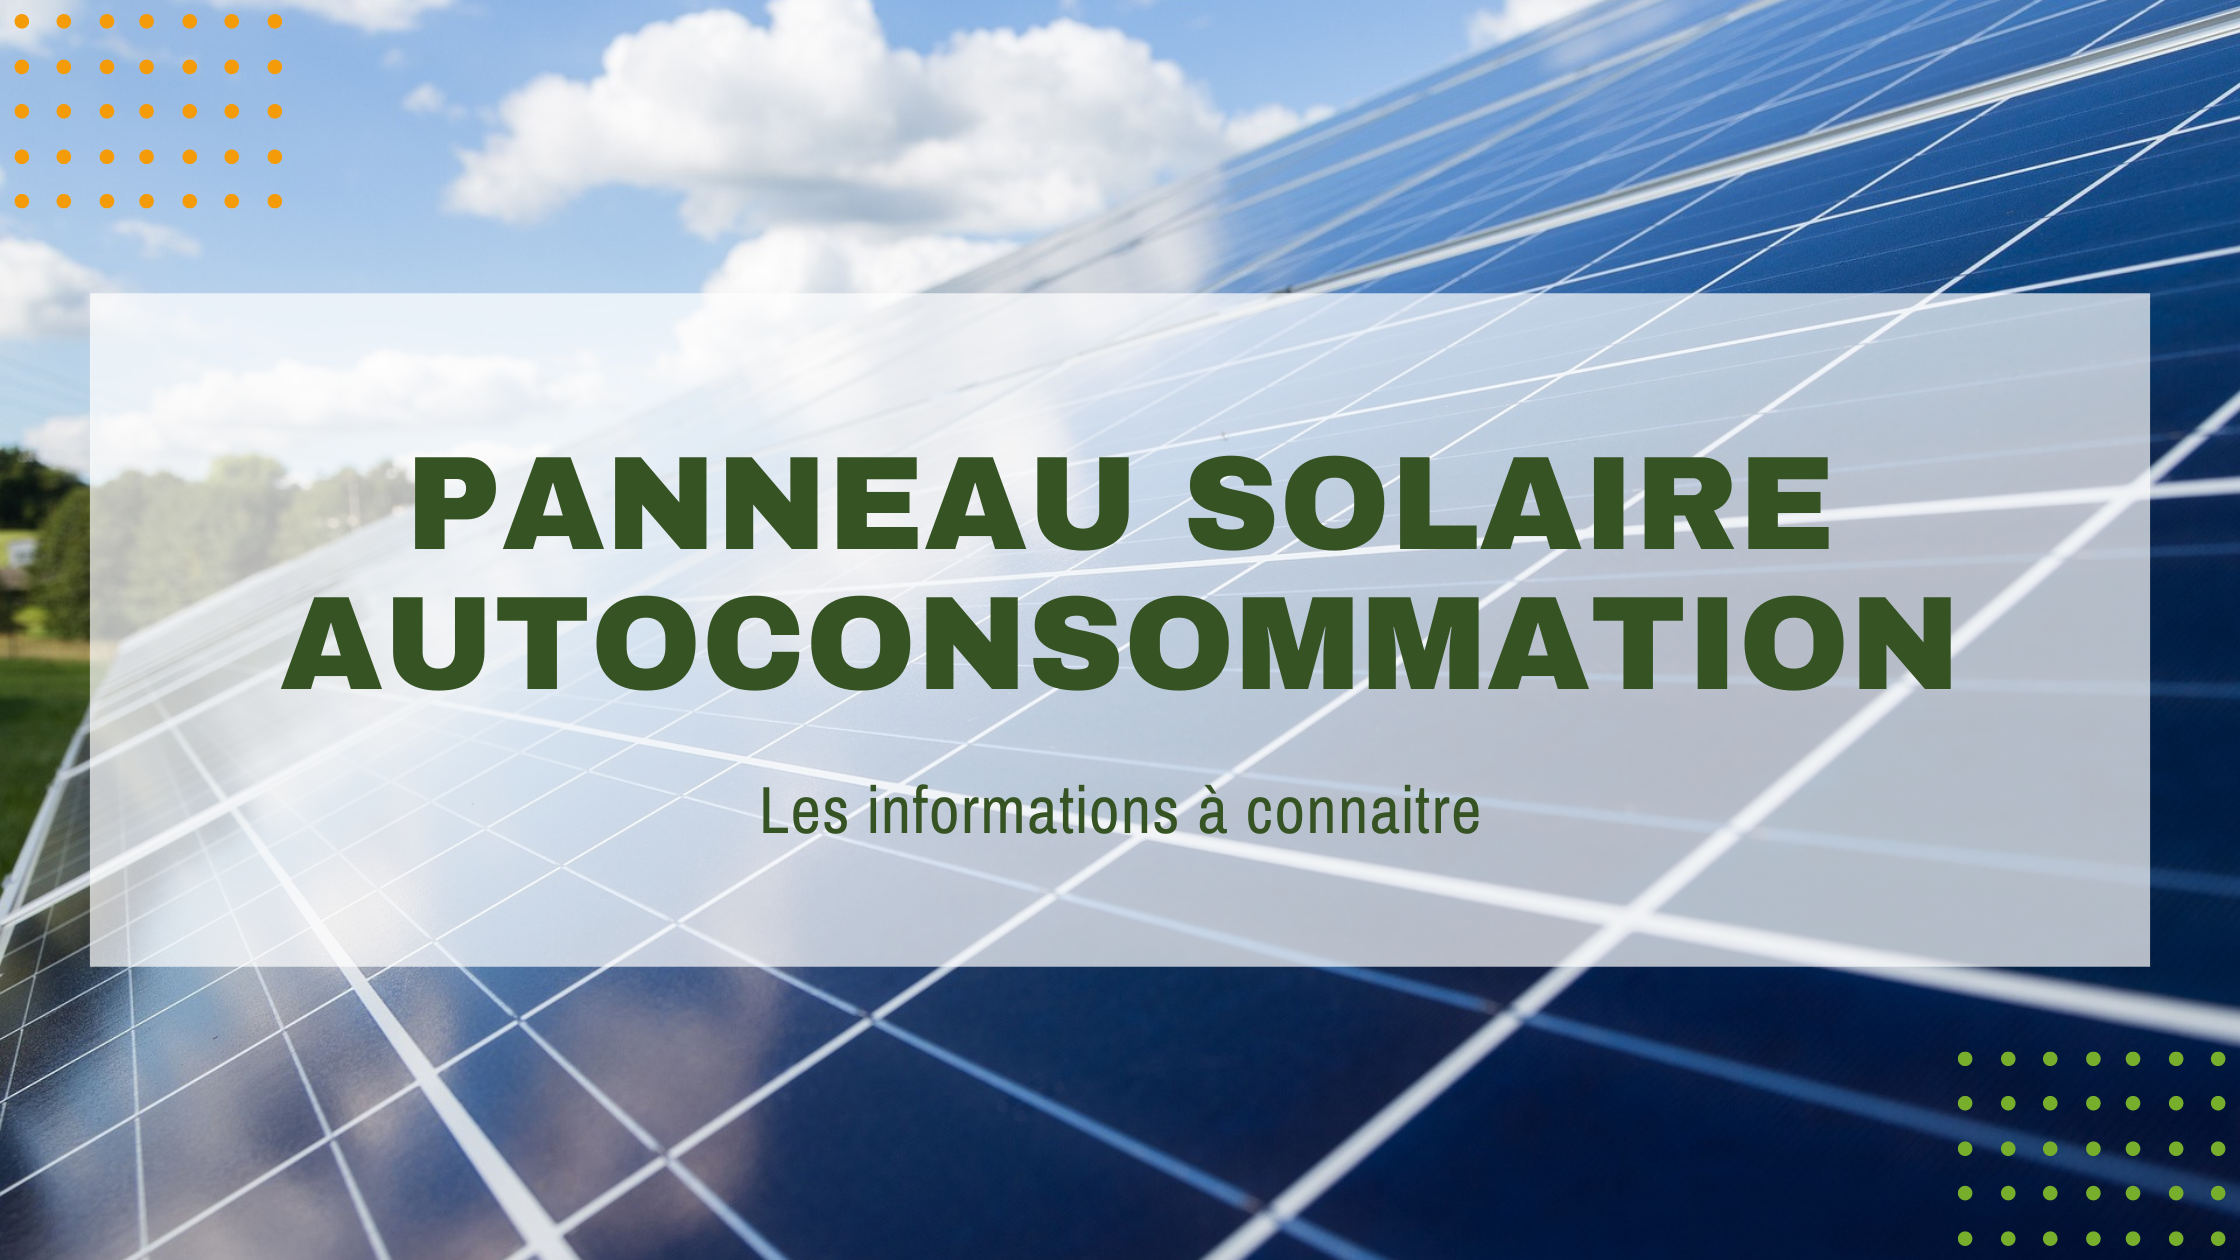 You are currently viewing Panneau solaire autoconsommation : ce qu’il faut savoir